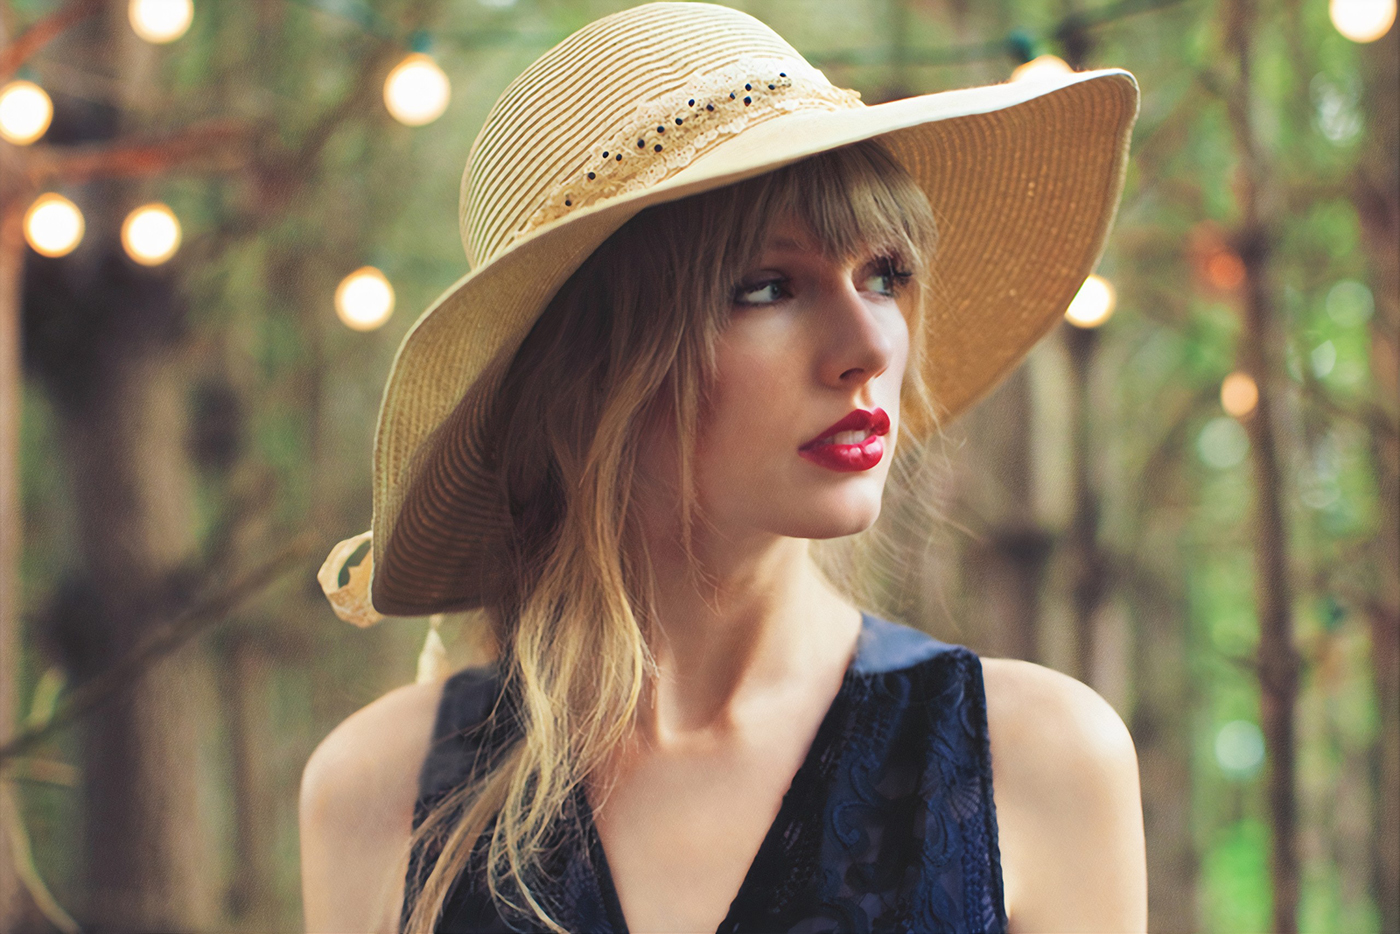 People 1400x934 Taylor Swift women singer blonde blue eyes lipstick long hair hat depth of field women with hats